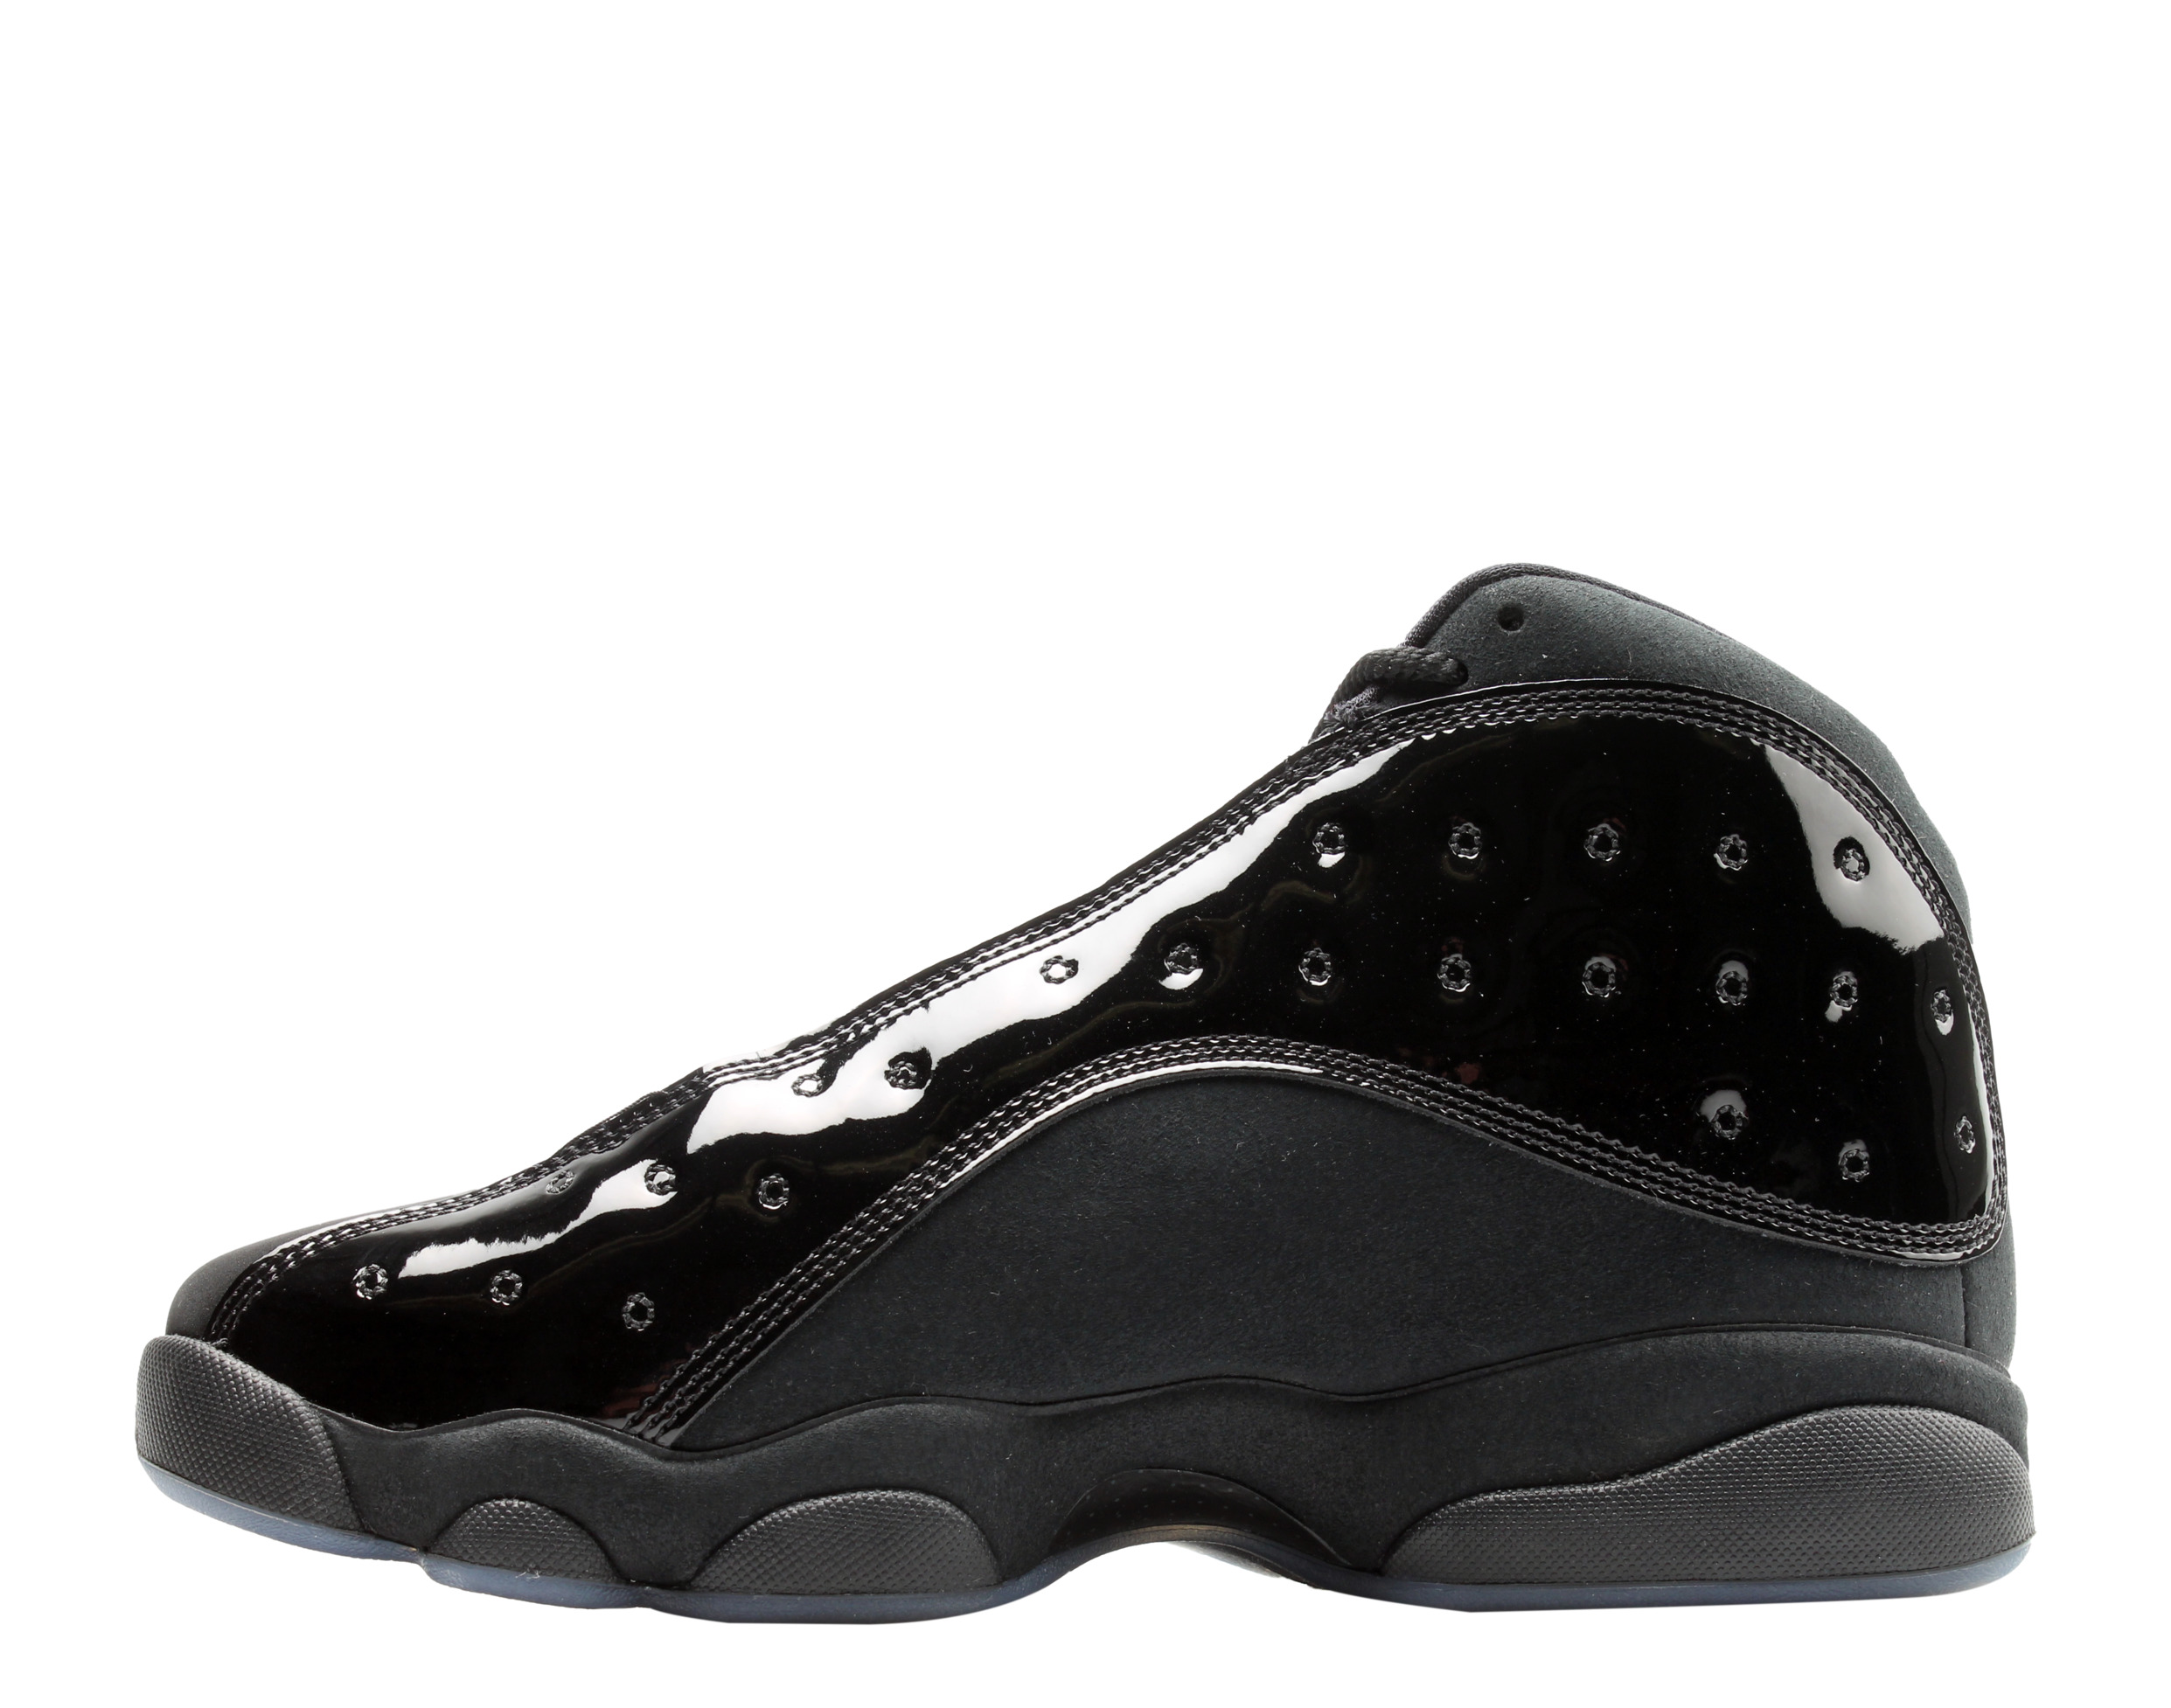 Nike Air Jordan 13 Retro Black Cap and Gown Men's Basketball Shoes 414571-012 - image 3 of 6